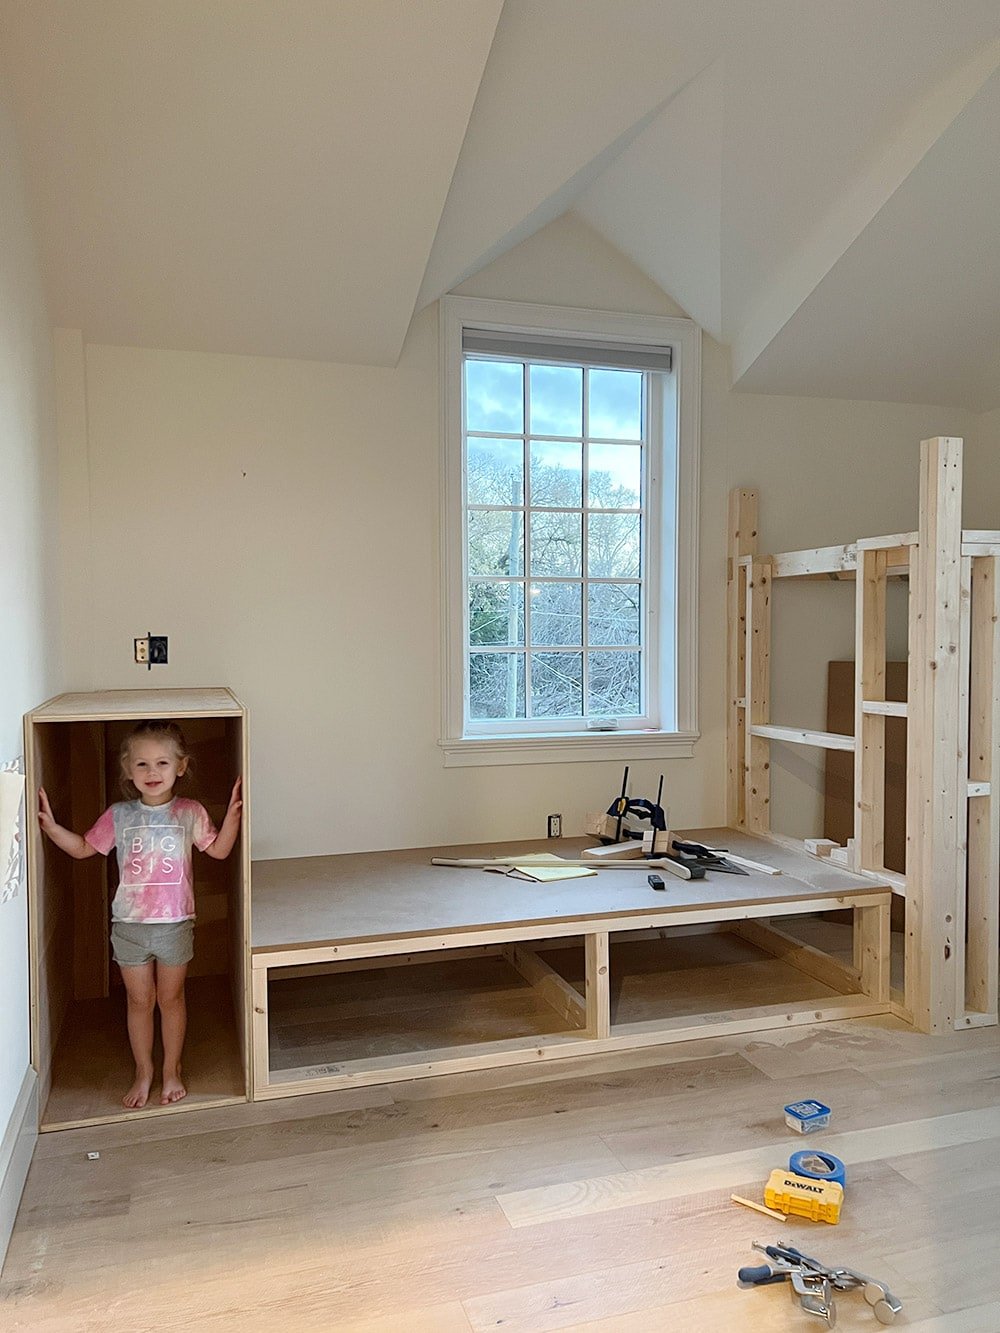 diy kids bedroom built in bed loft